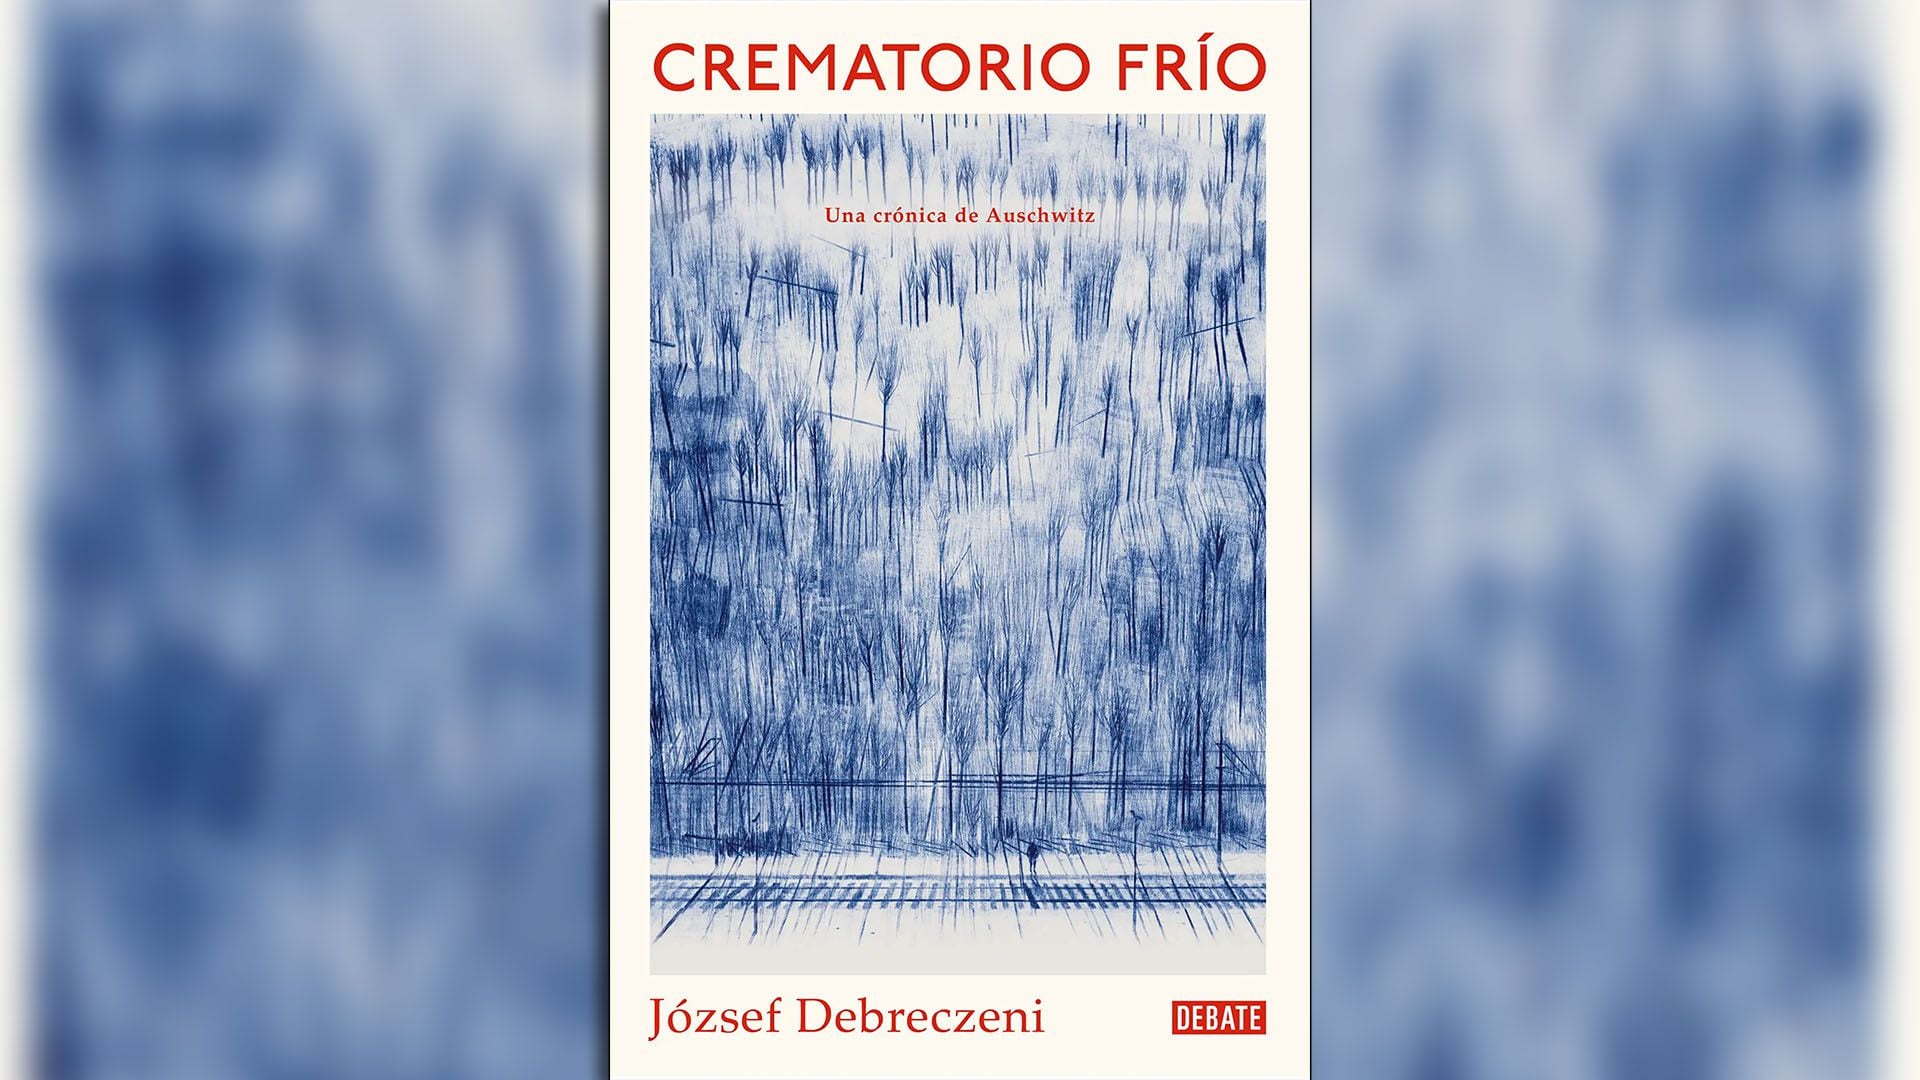 József Debreczeni Crematorio frío tapa libro